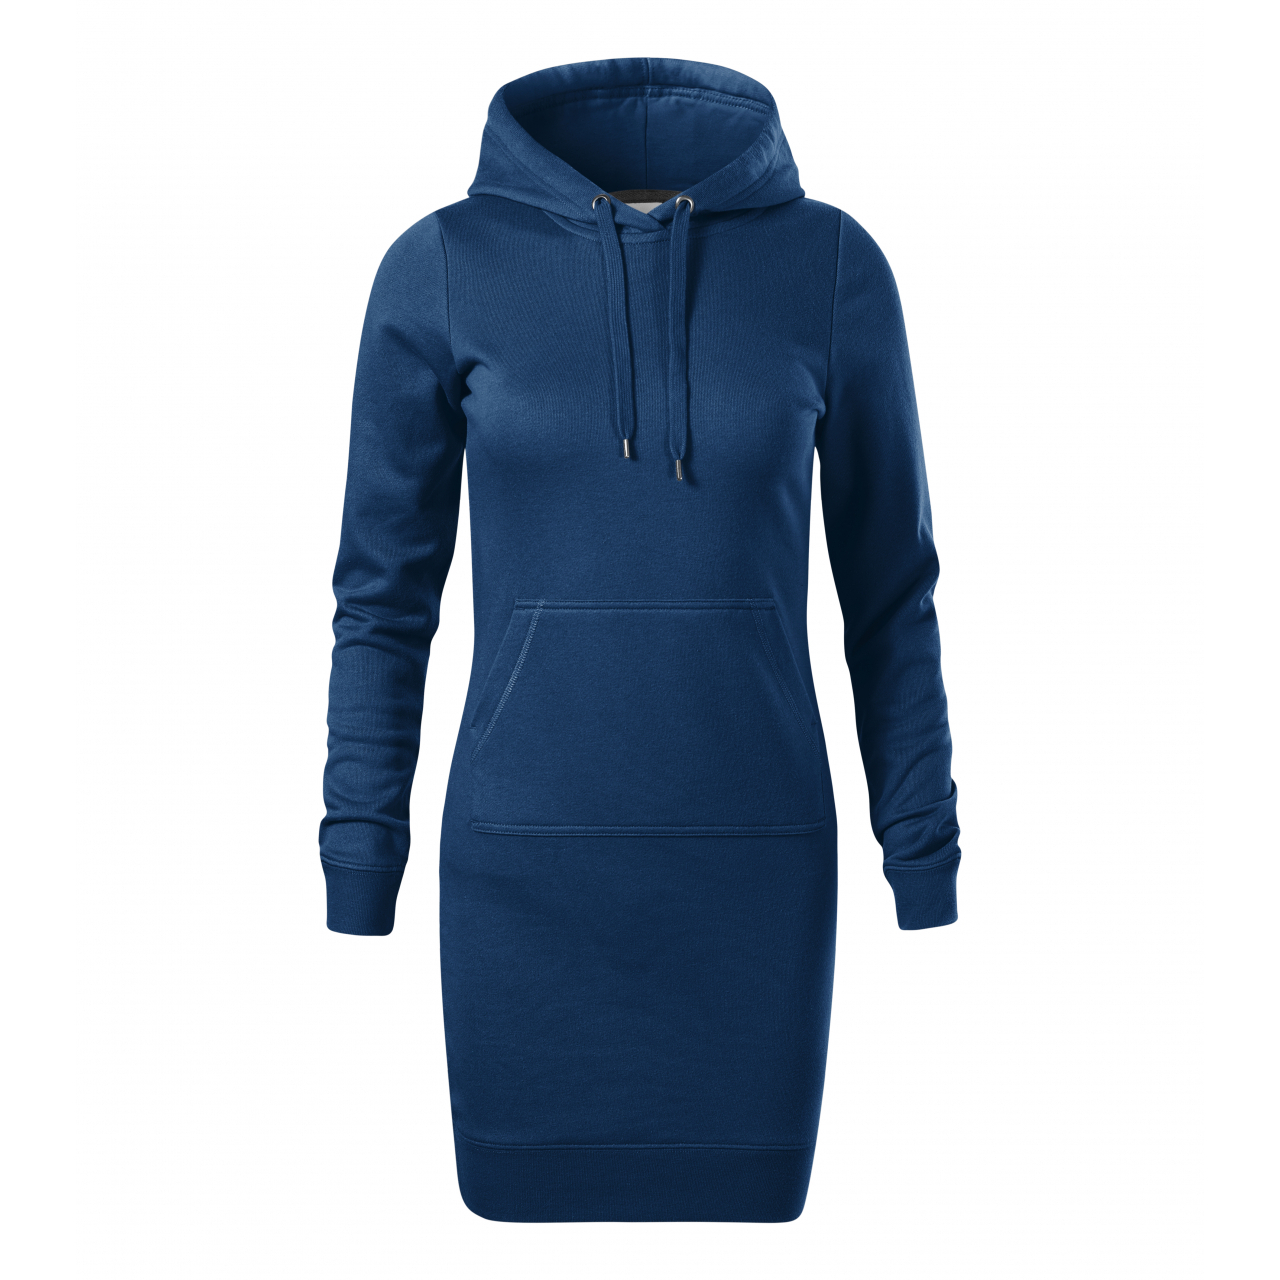 Šaty dámské Malfini Snap - tmavě modré, XS